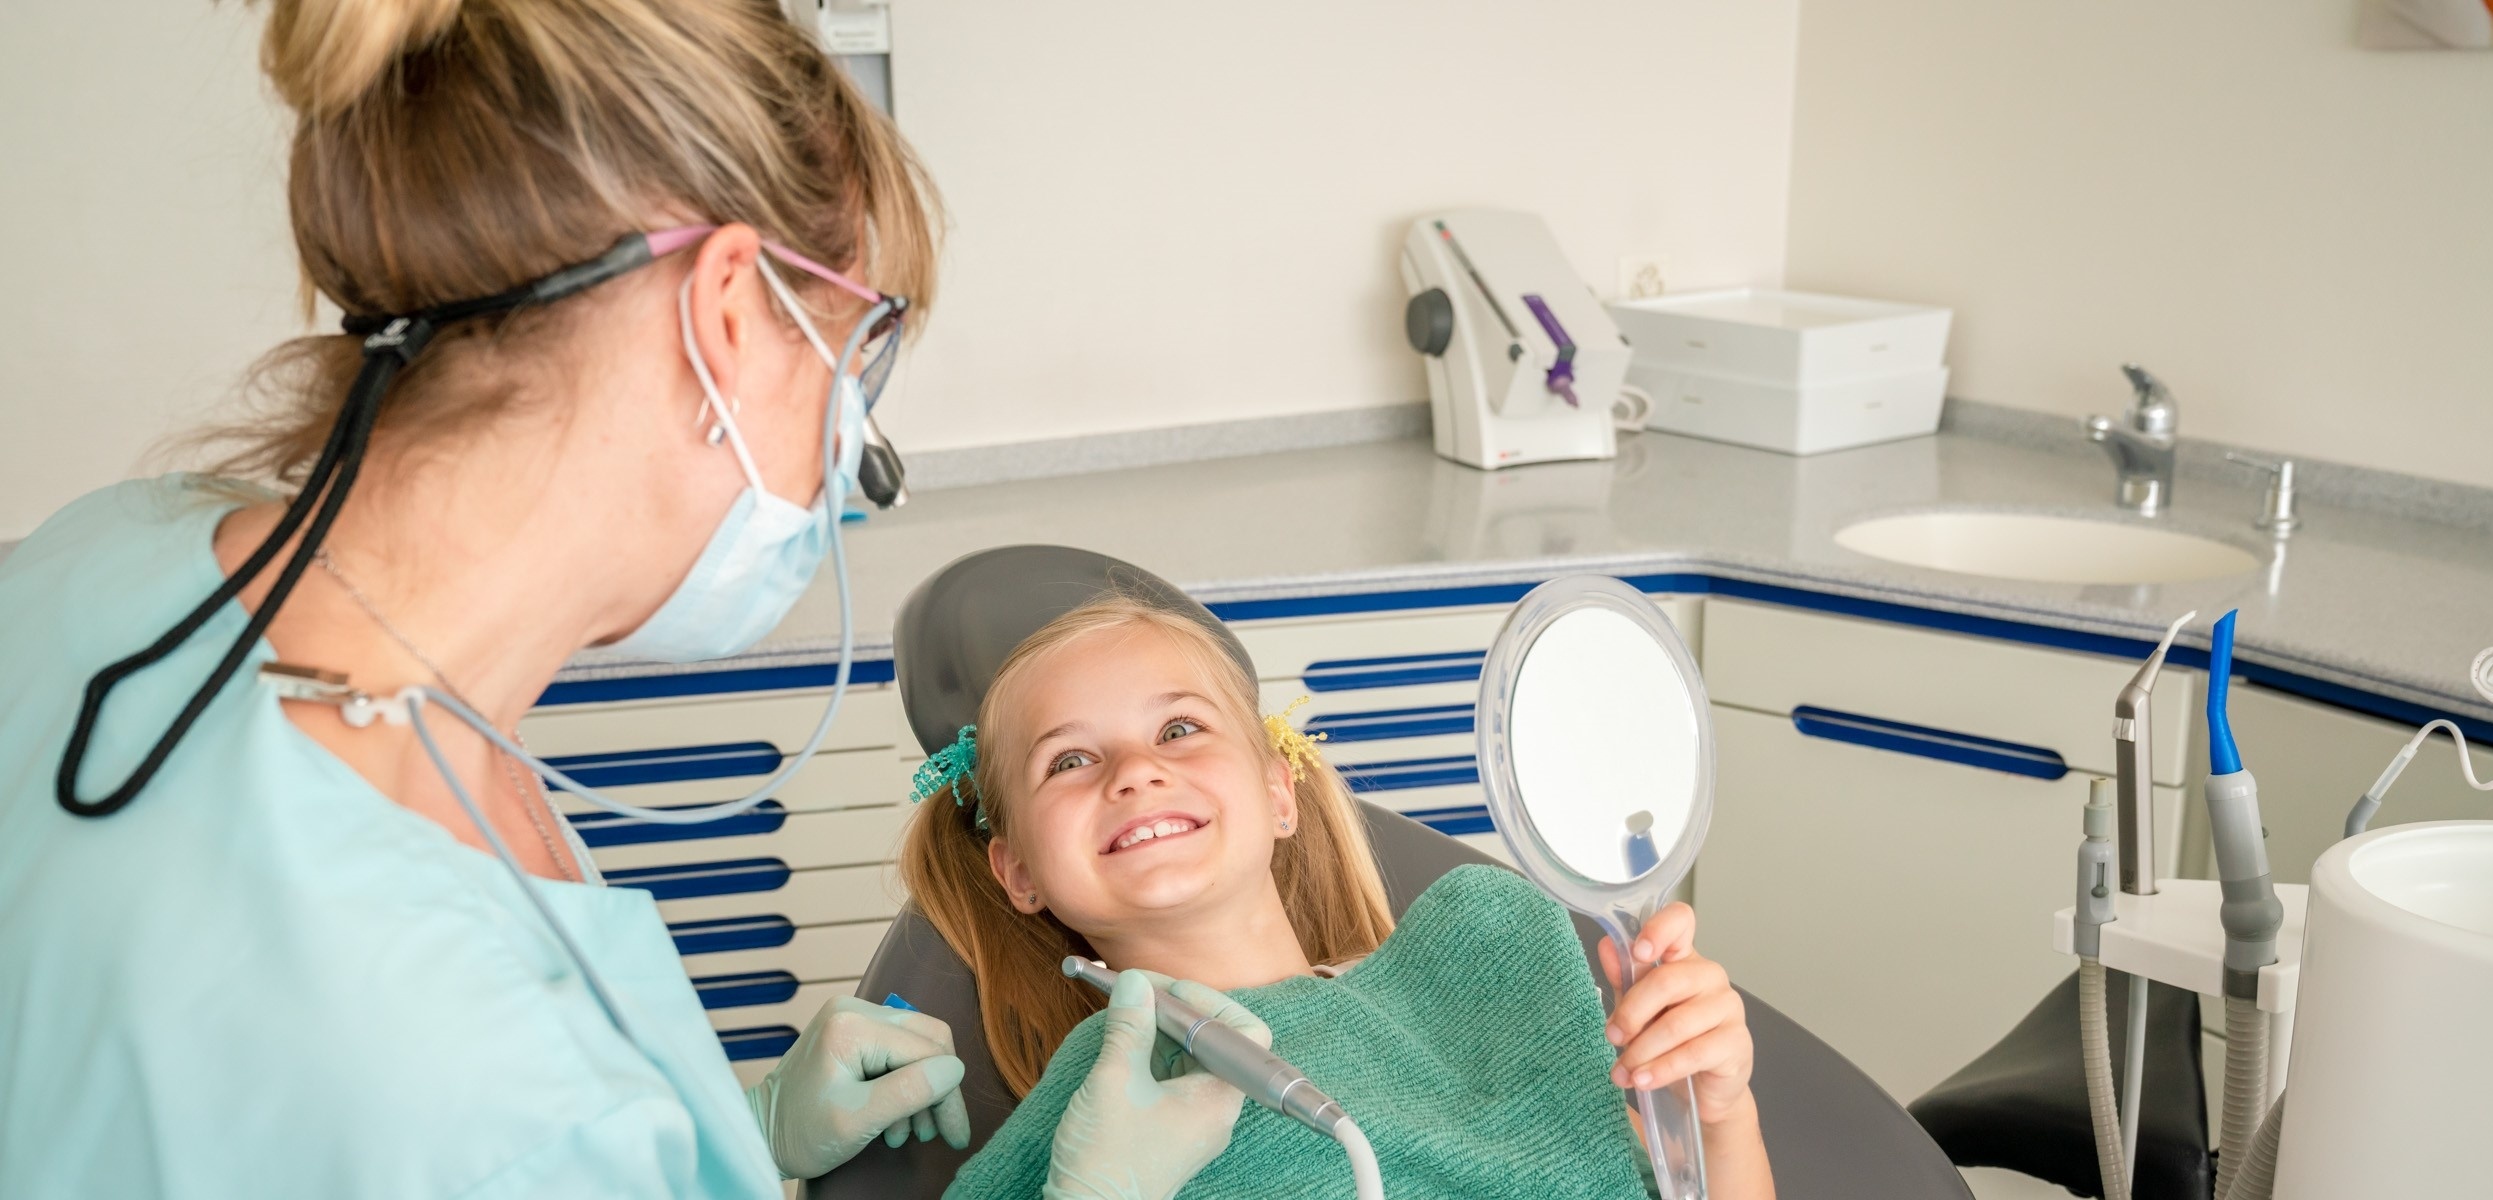 Familienzahnarzt - Zahnärztin - Zahnarztpraxis für Kinder - Kinderbehandlungen - Zürich - Telefon 044 221 41 41